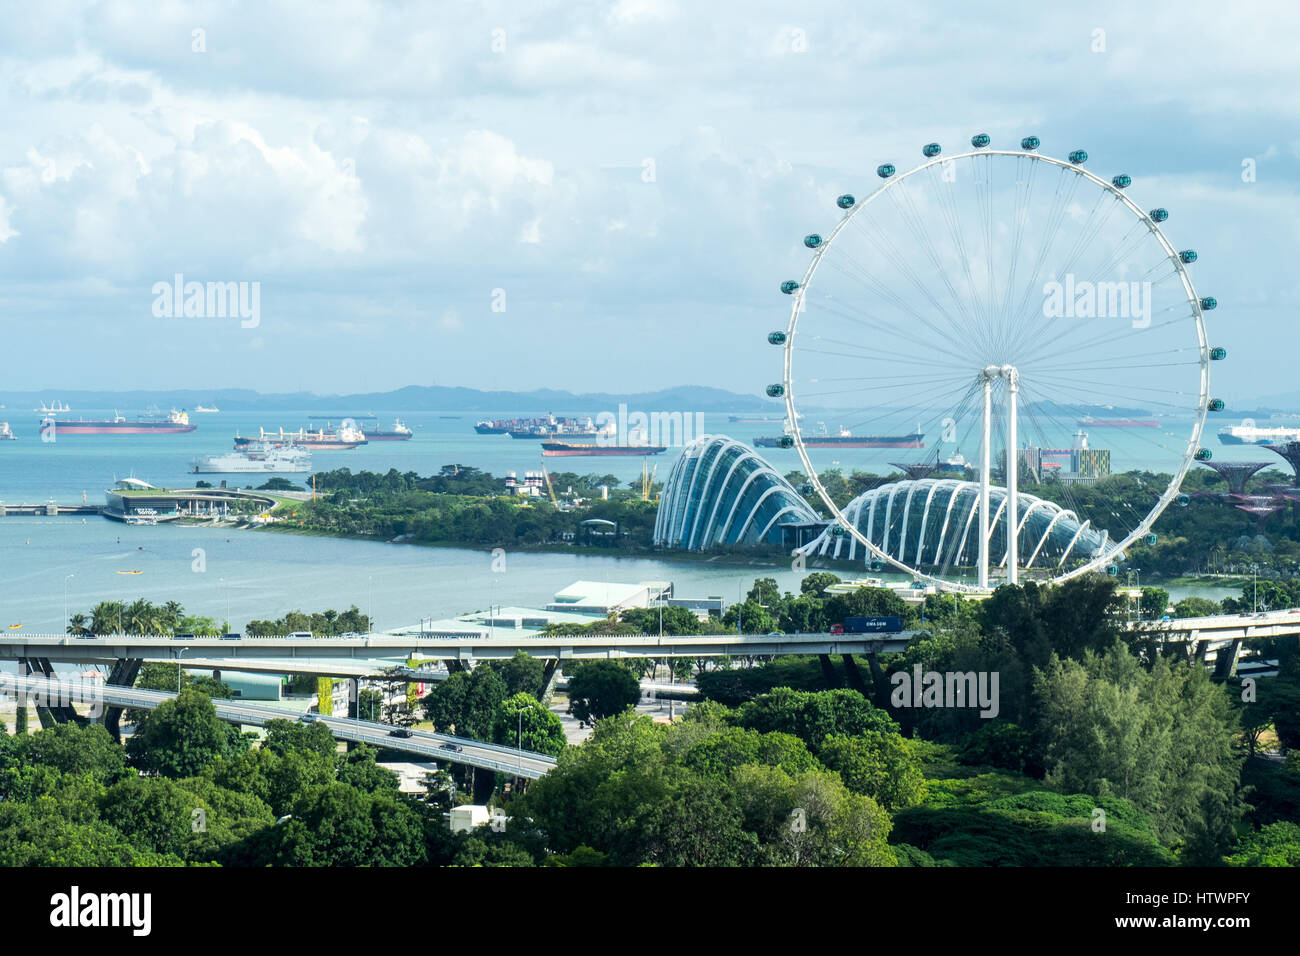 El Singapore Flyer, una noria gigante, junto a los jardines de la Bahía, Marina Sands, Singapur. Foto de stock